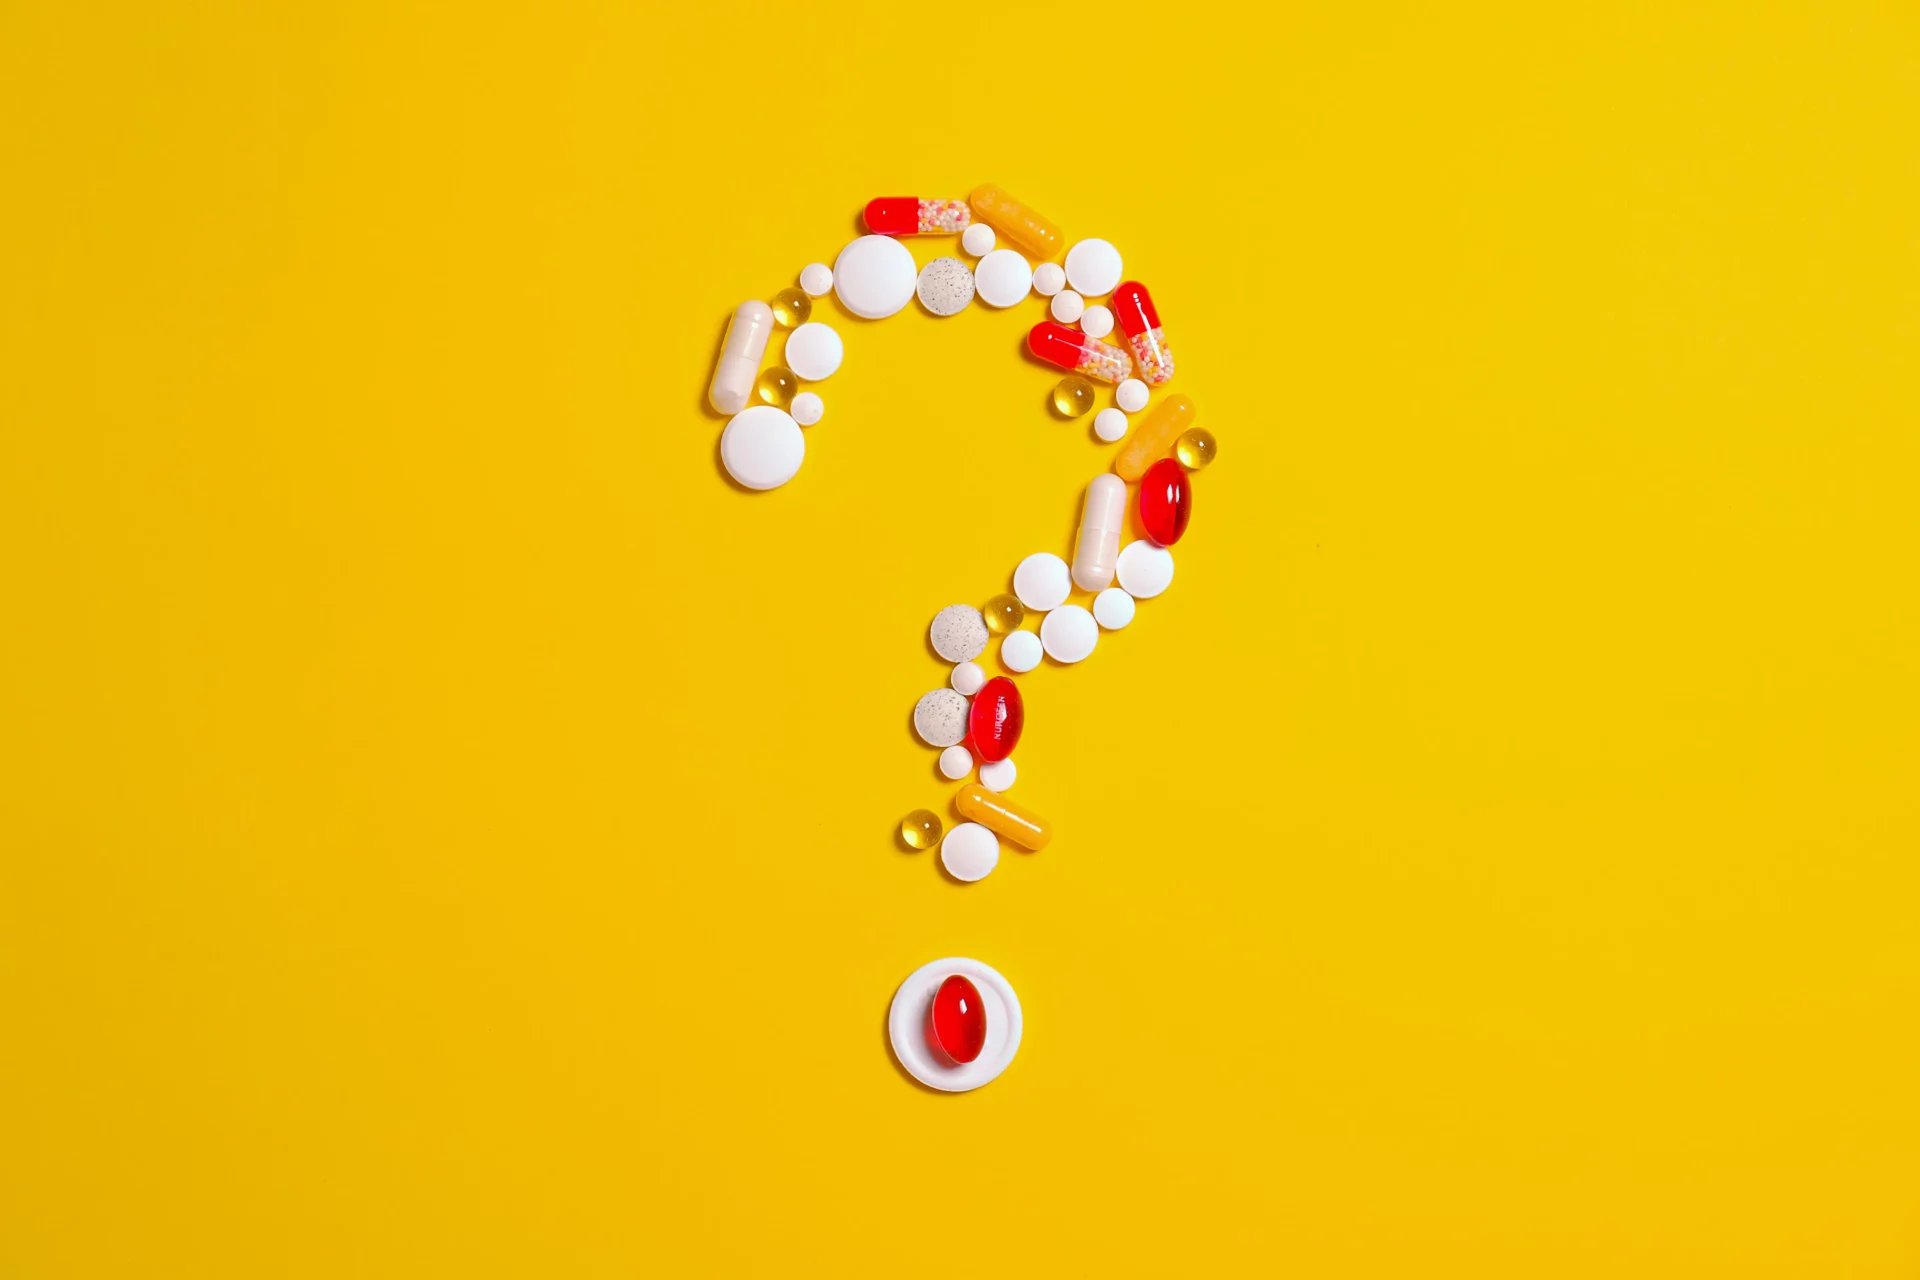 vitamins shaped like a question mark